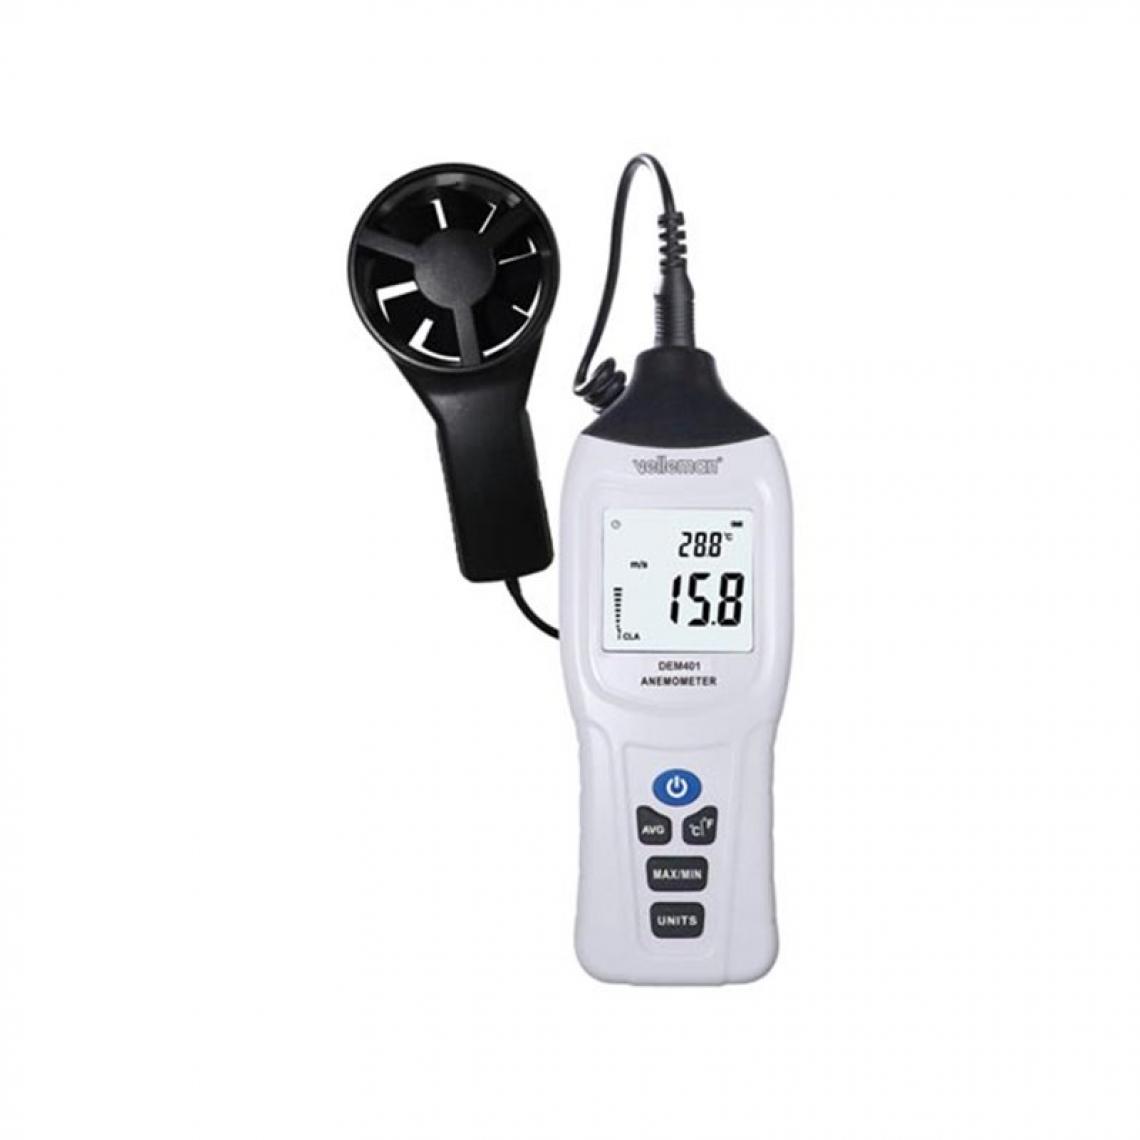 Perel - Thermomètre-Anémomètre Numérique - Accessoires chauffe-eau